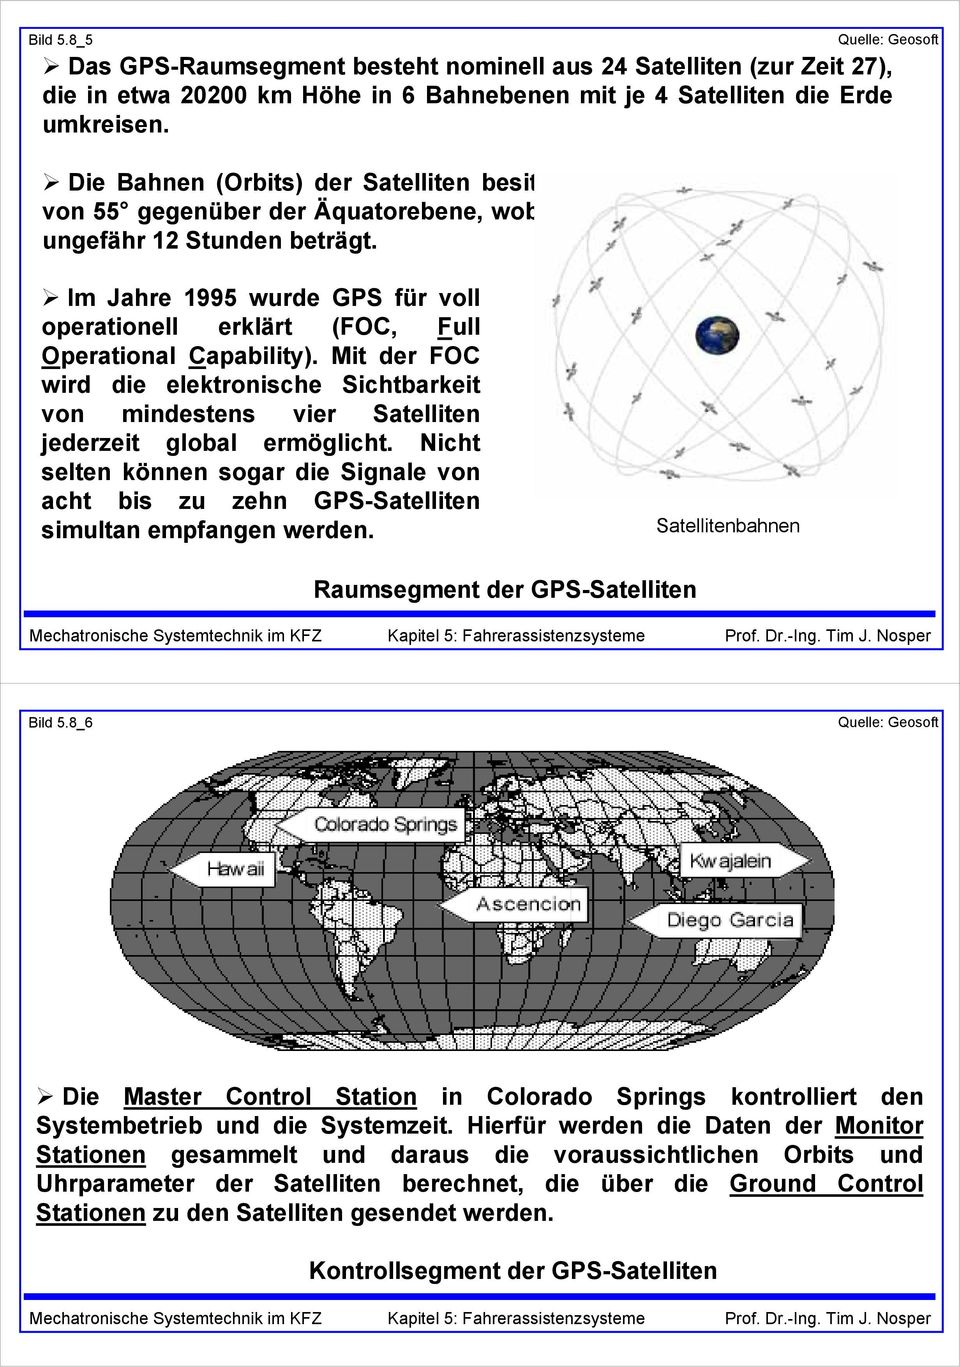 Im Jahre 1995 wurde GPS für voll operationell erklärt (FOC, Full Operational Capability). Mit der FOC wird die elektronische Sichtbarkeit von mindestens vier Satelliten jederzeit global ermöglicht.